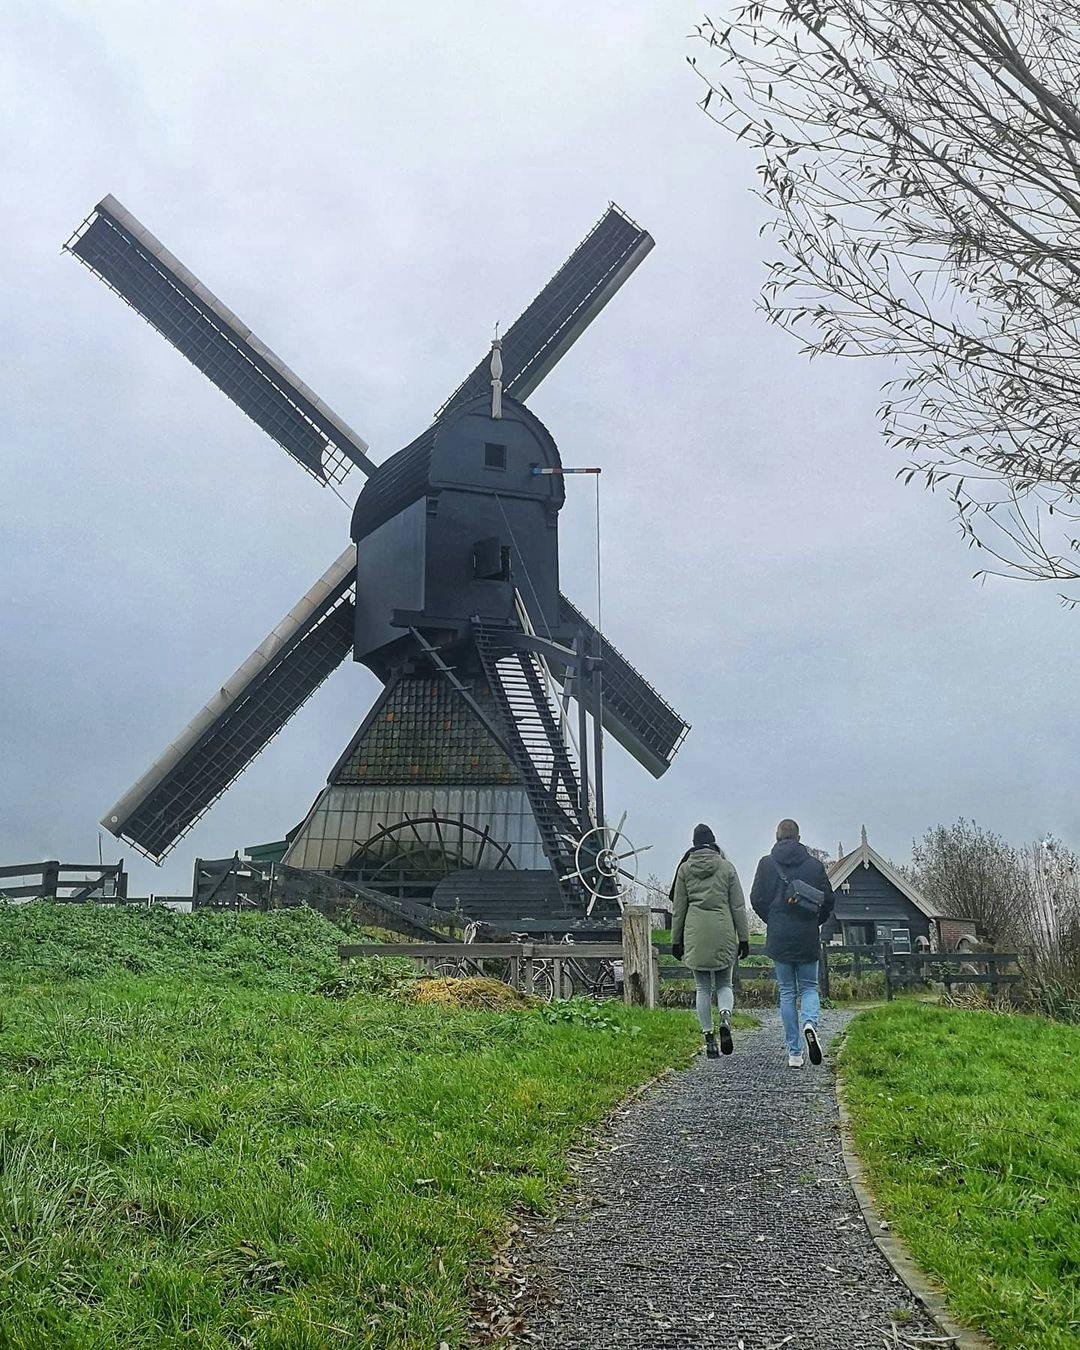 Viagem na Holanda: A experiência de ver de perto um moinho de vento  construído em 1738 em perfeito funcionamento